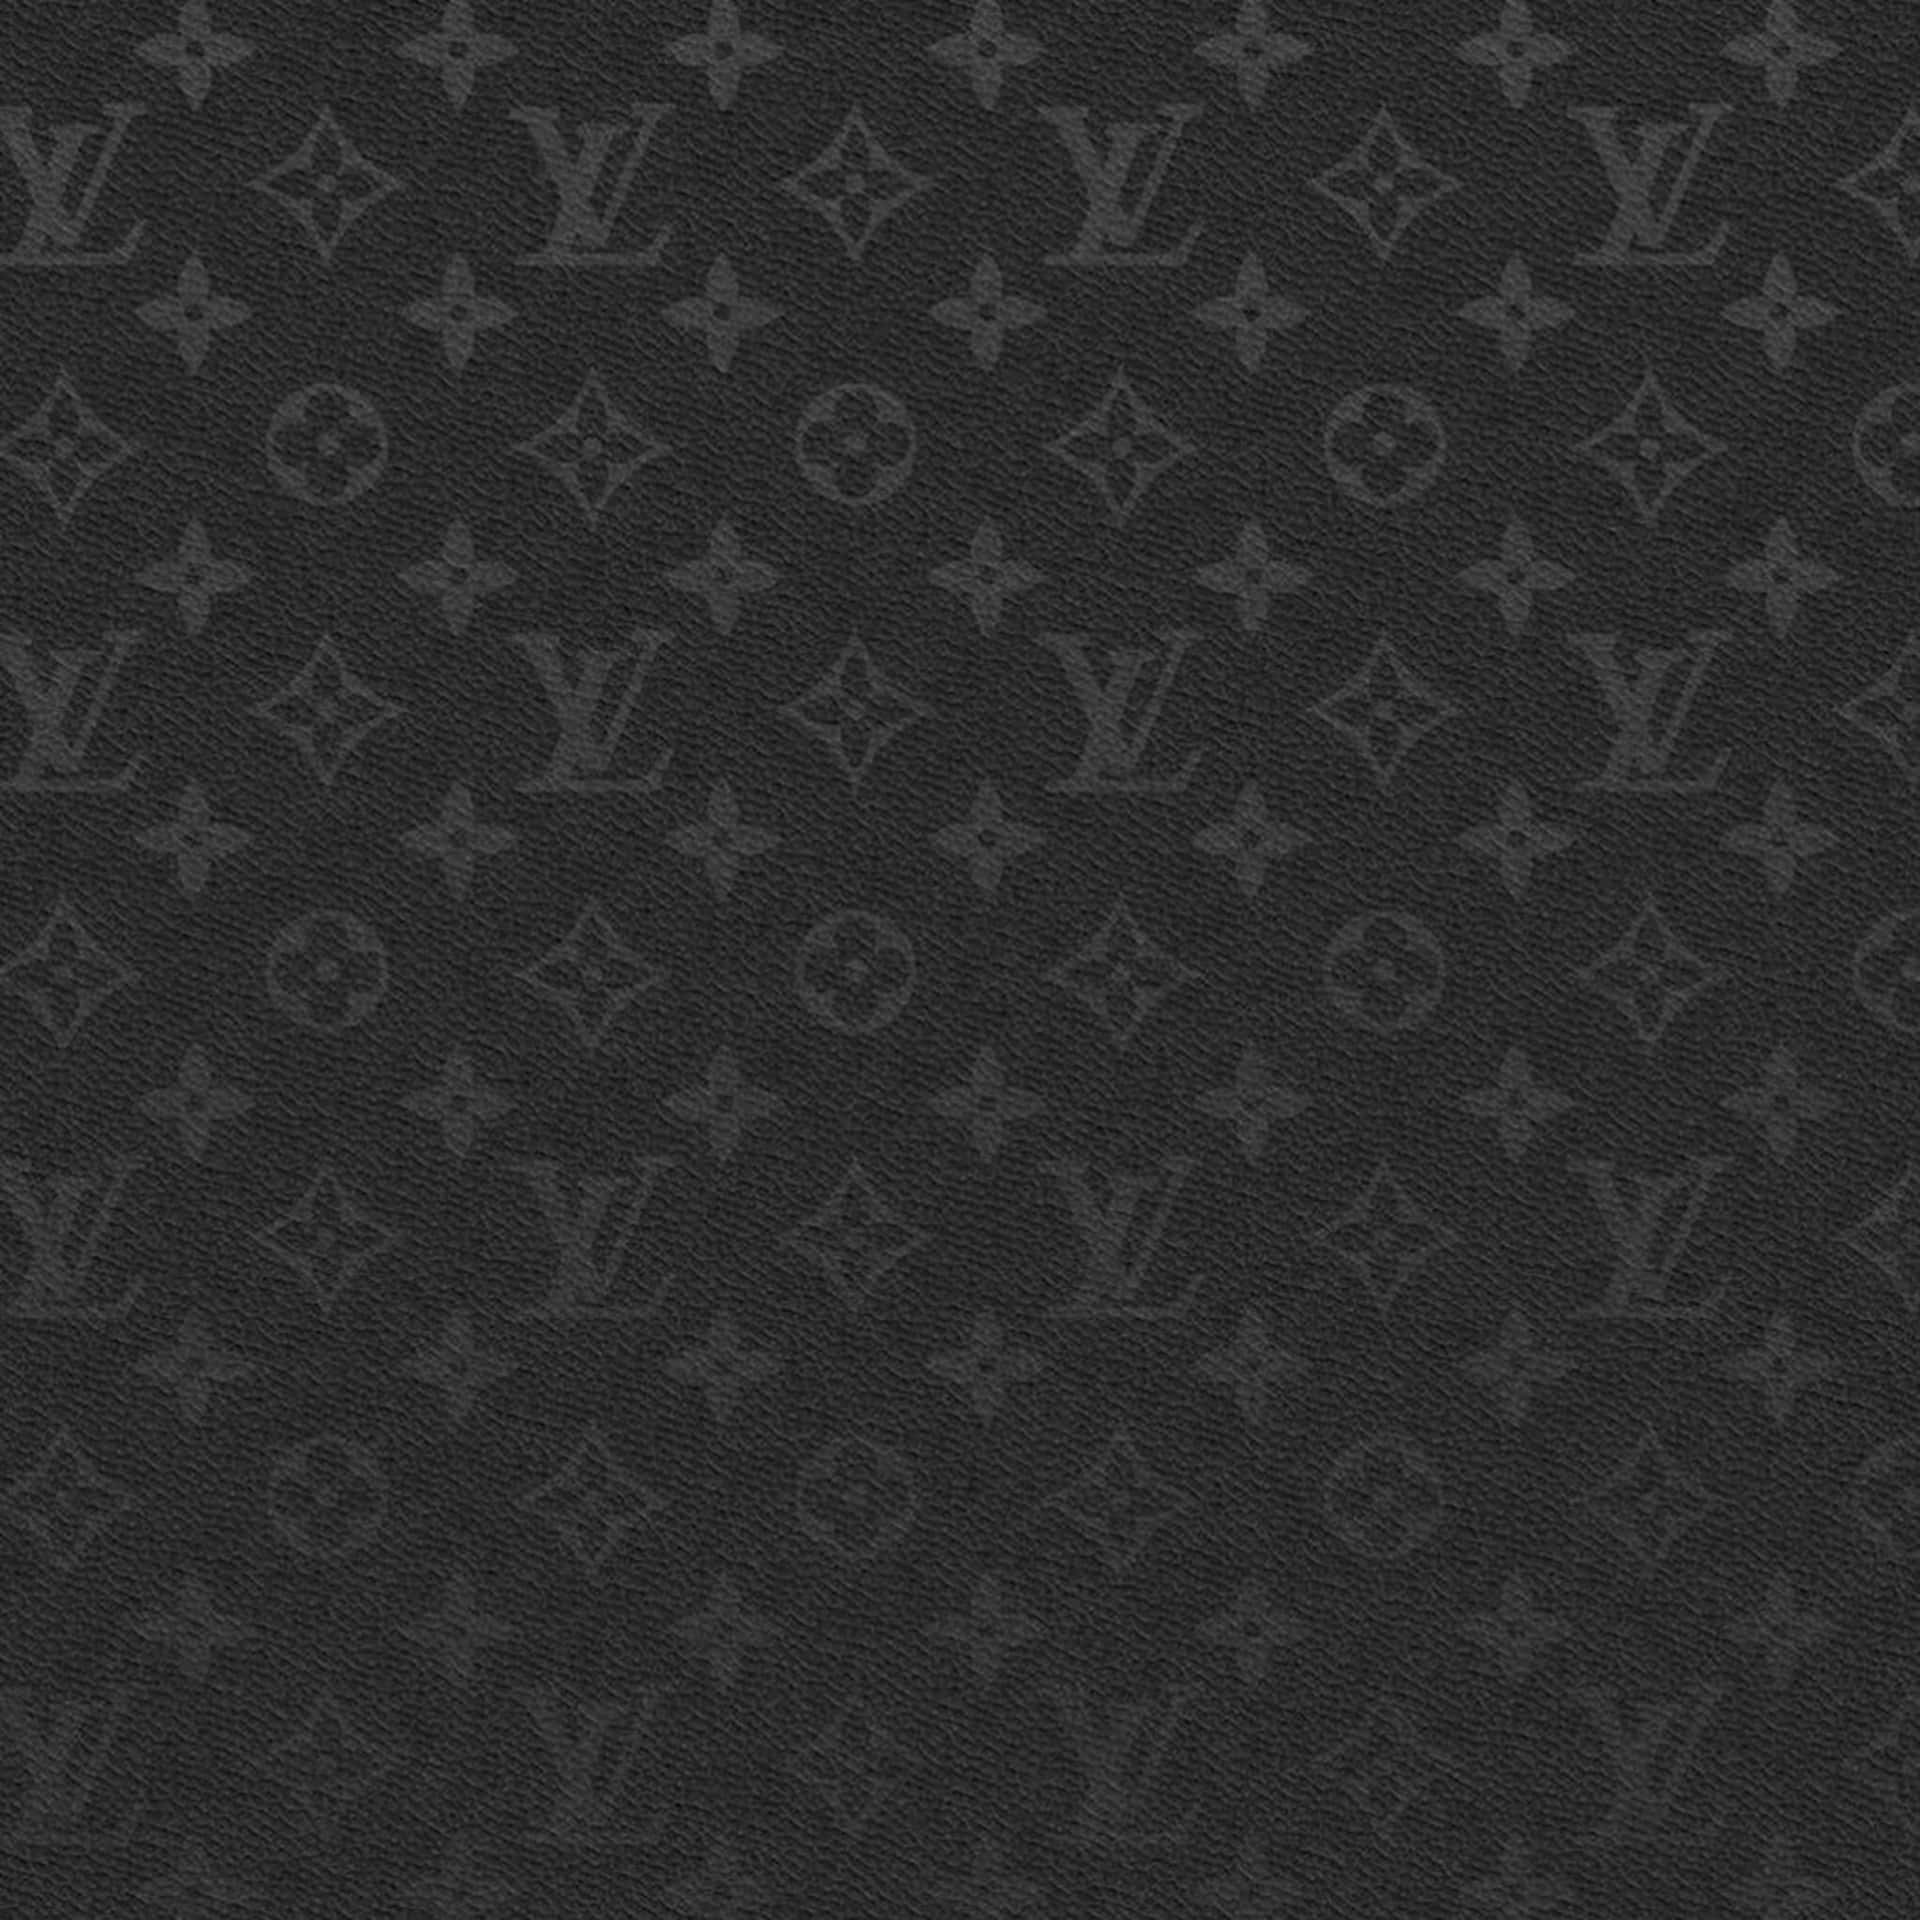 wallpaper louis vuitton pattern black